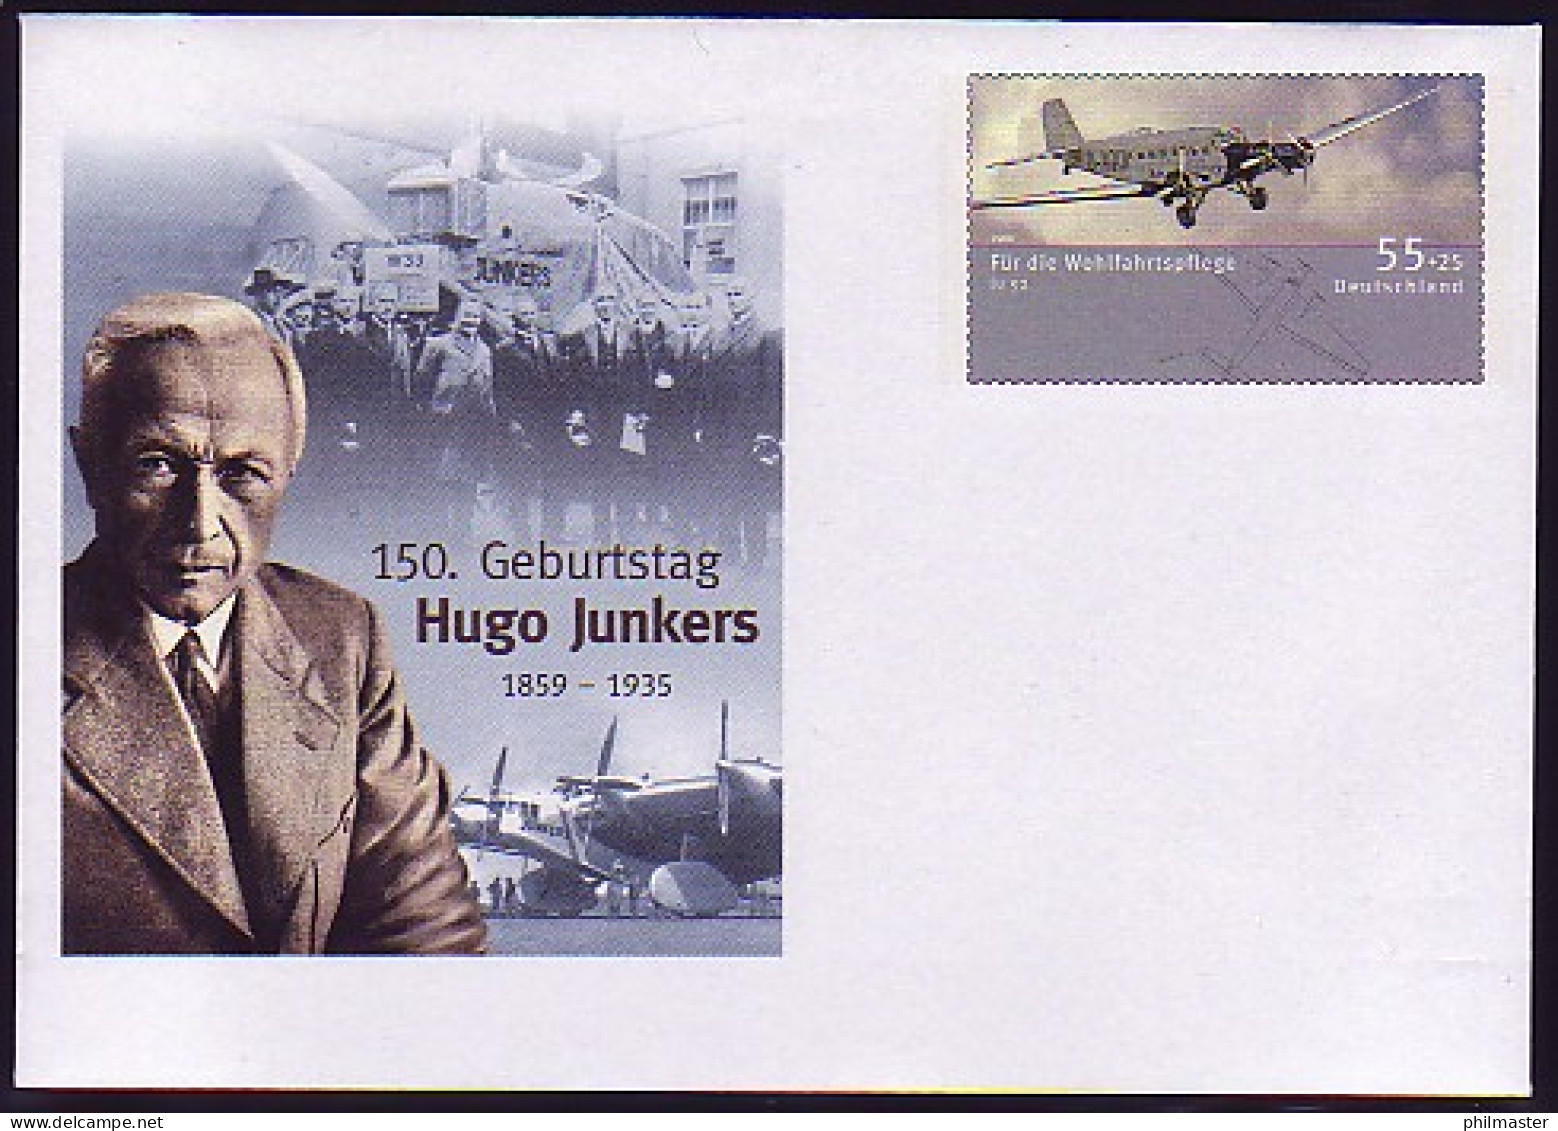 USo 173 Hugo Junkers 2009, Postfrisch - Briefomslagen - Ongebruikt